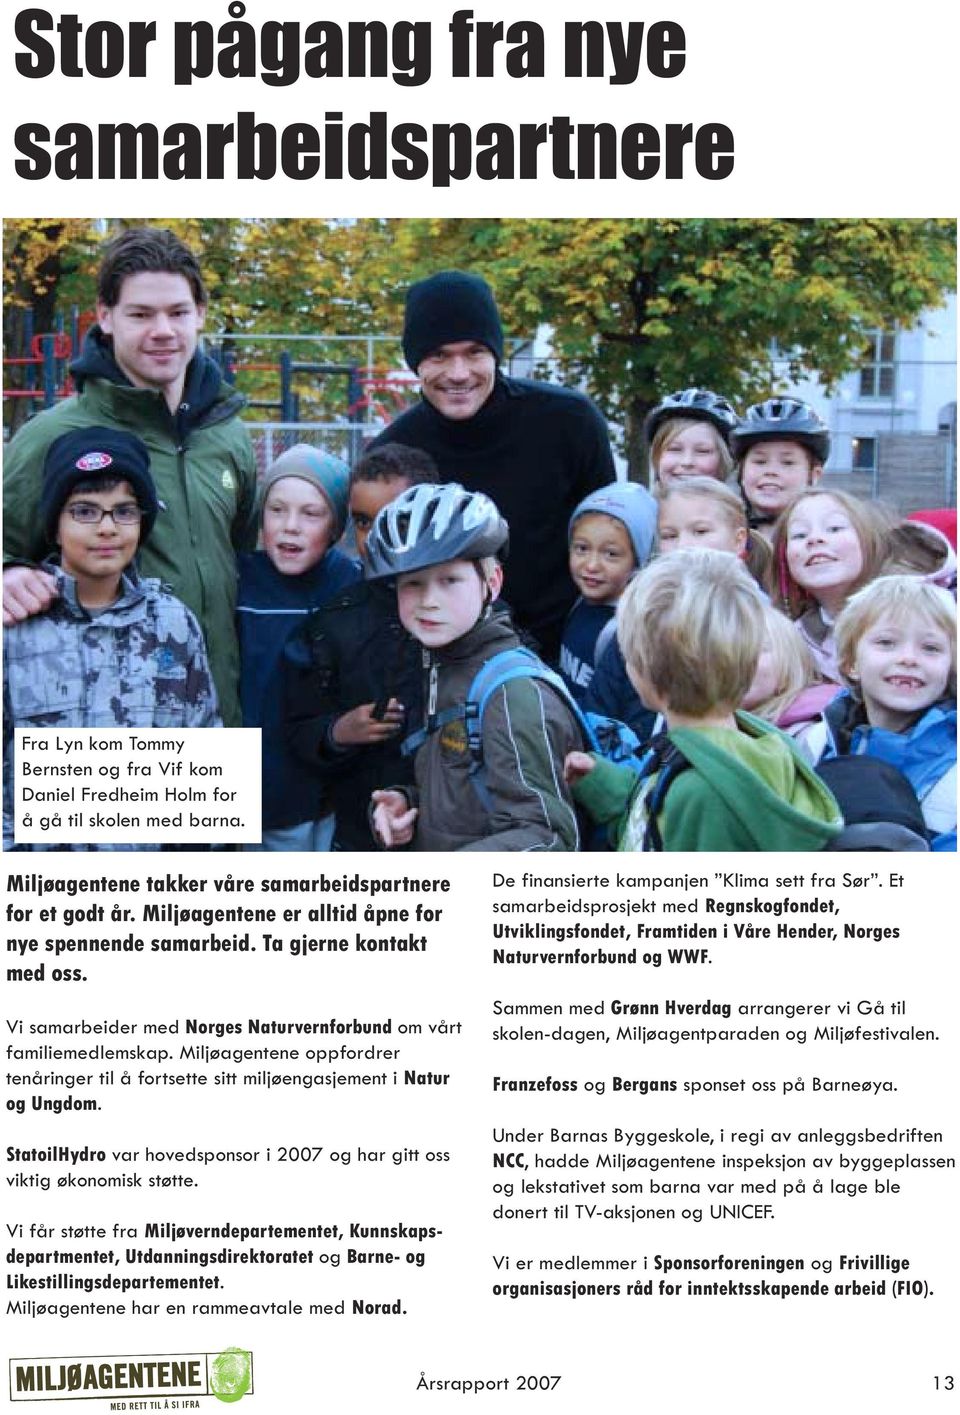 Miljøagentene oppfordrer tenåringer til å fortsette sitt miljøengasjement i Natur og Ungdom. StatoilHydro var hovedsponsor i 2007 og har gitt oss viktig økonomisk støtte.